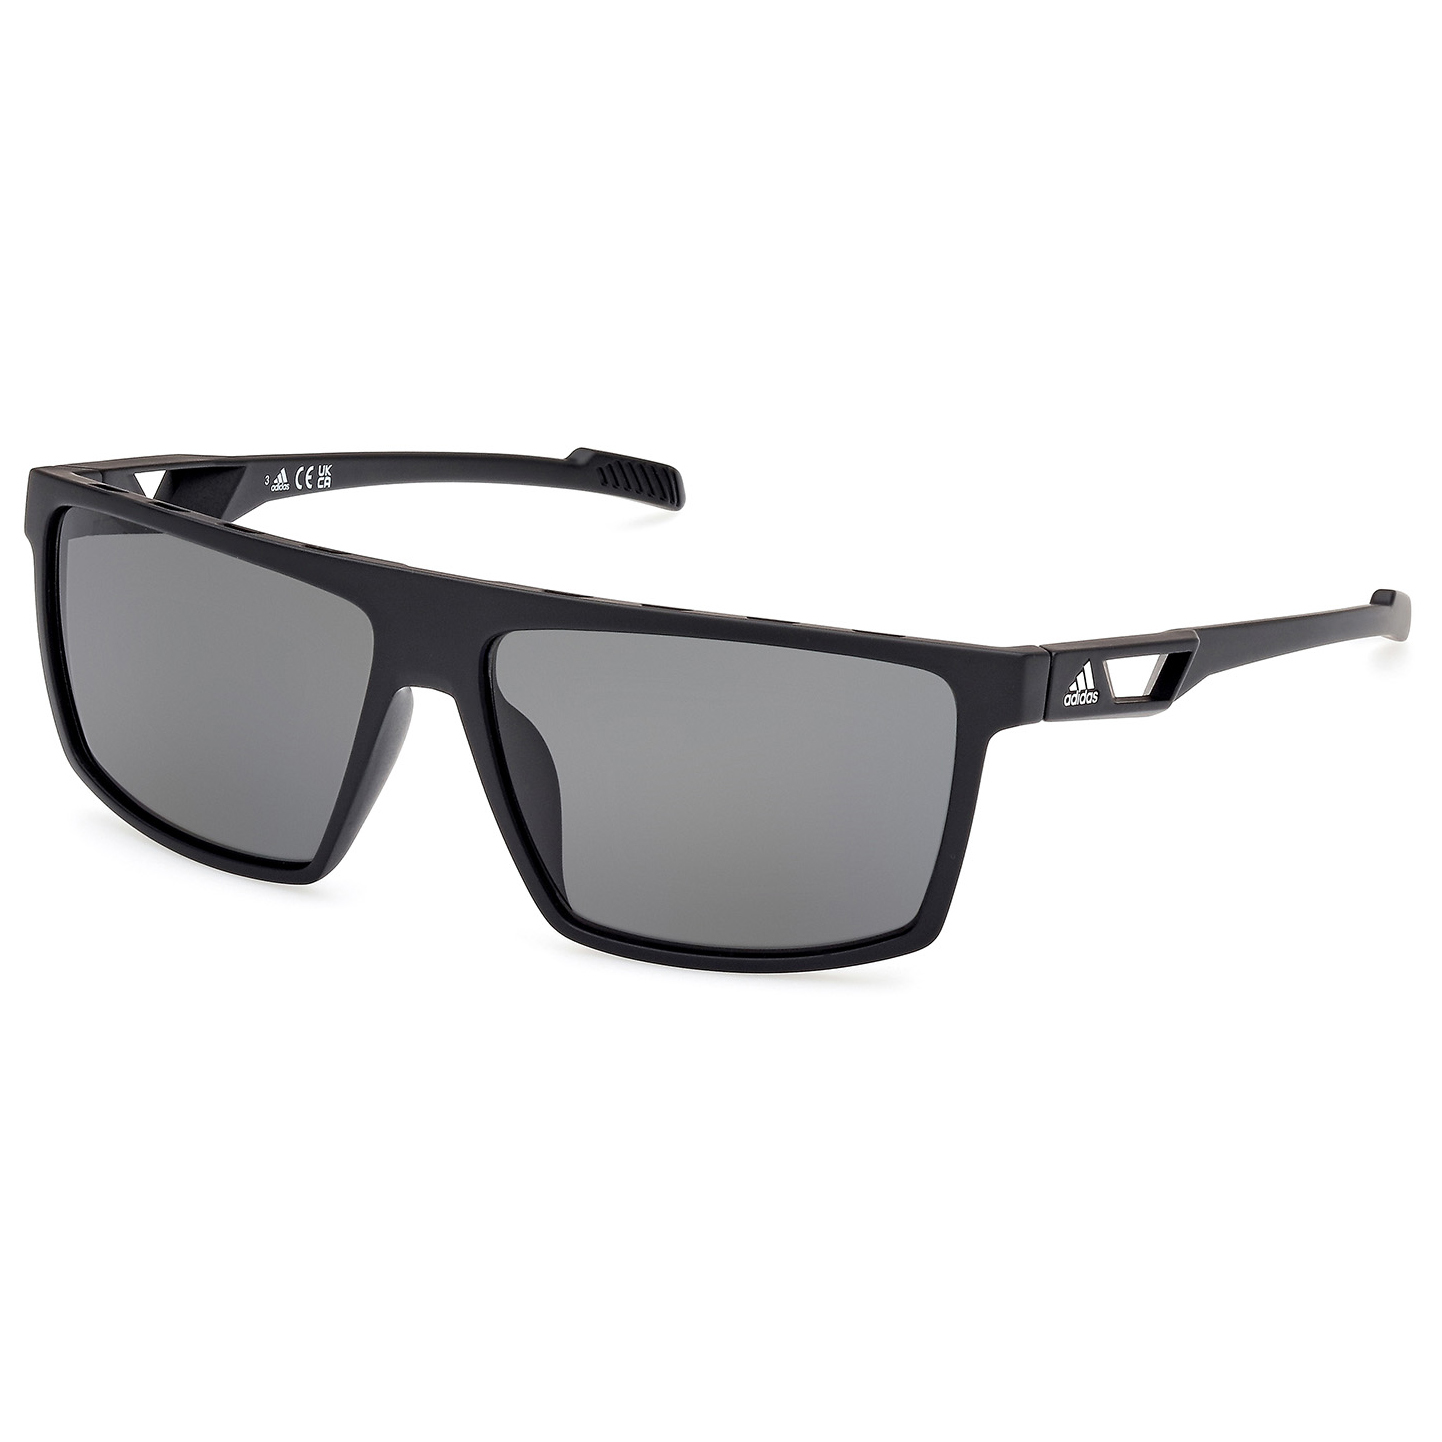 Солнцезащитные очки Adidas SP0083 Polarized Cat 3, матовый черный солнцезащитные очки adidas sp0083 mirror cat 3 цвет crystal